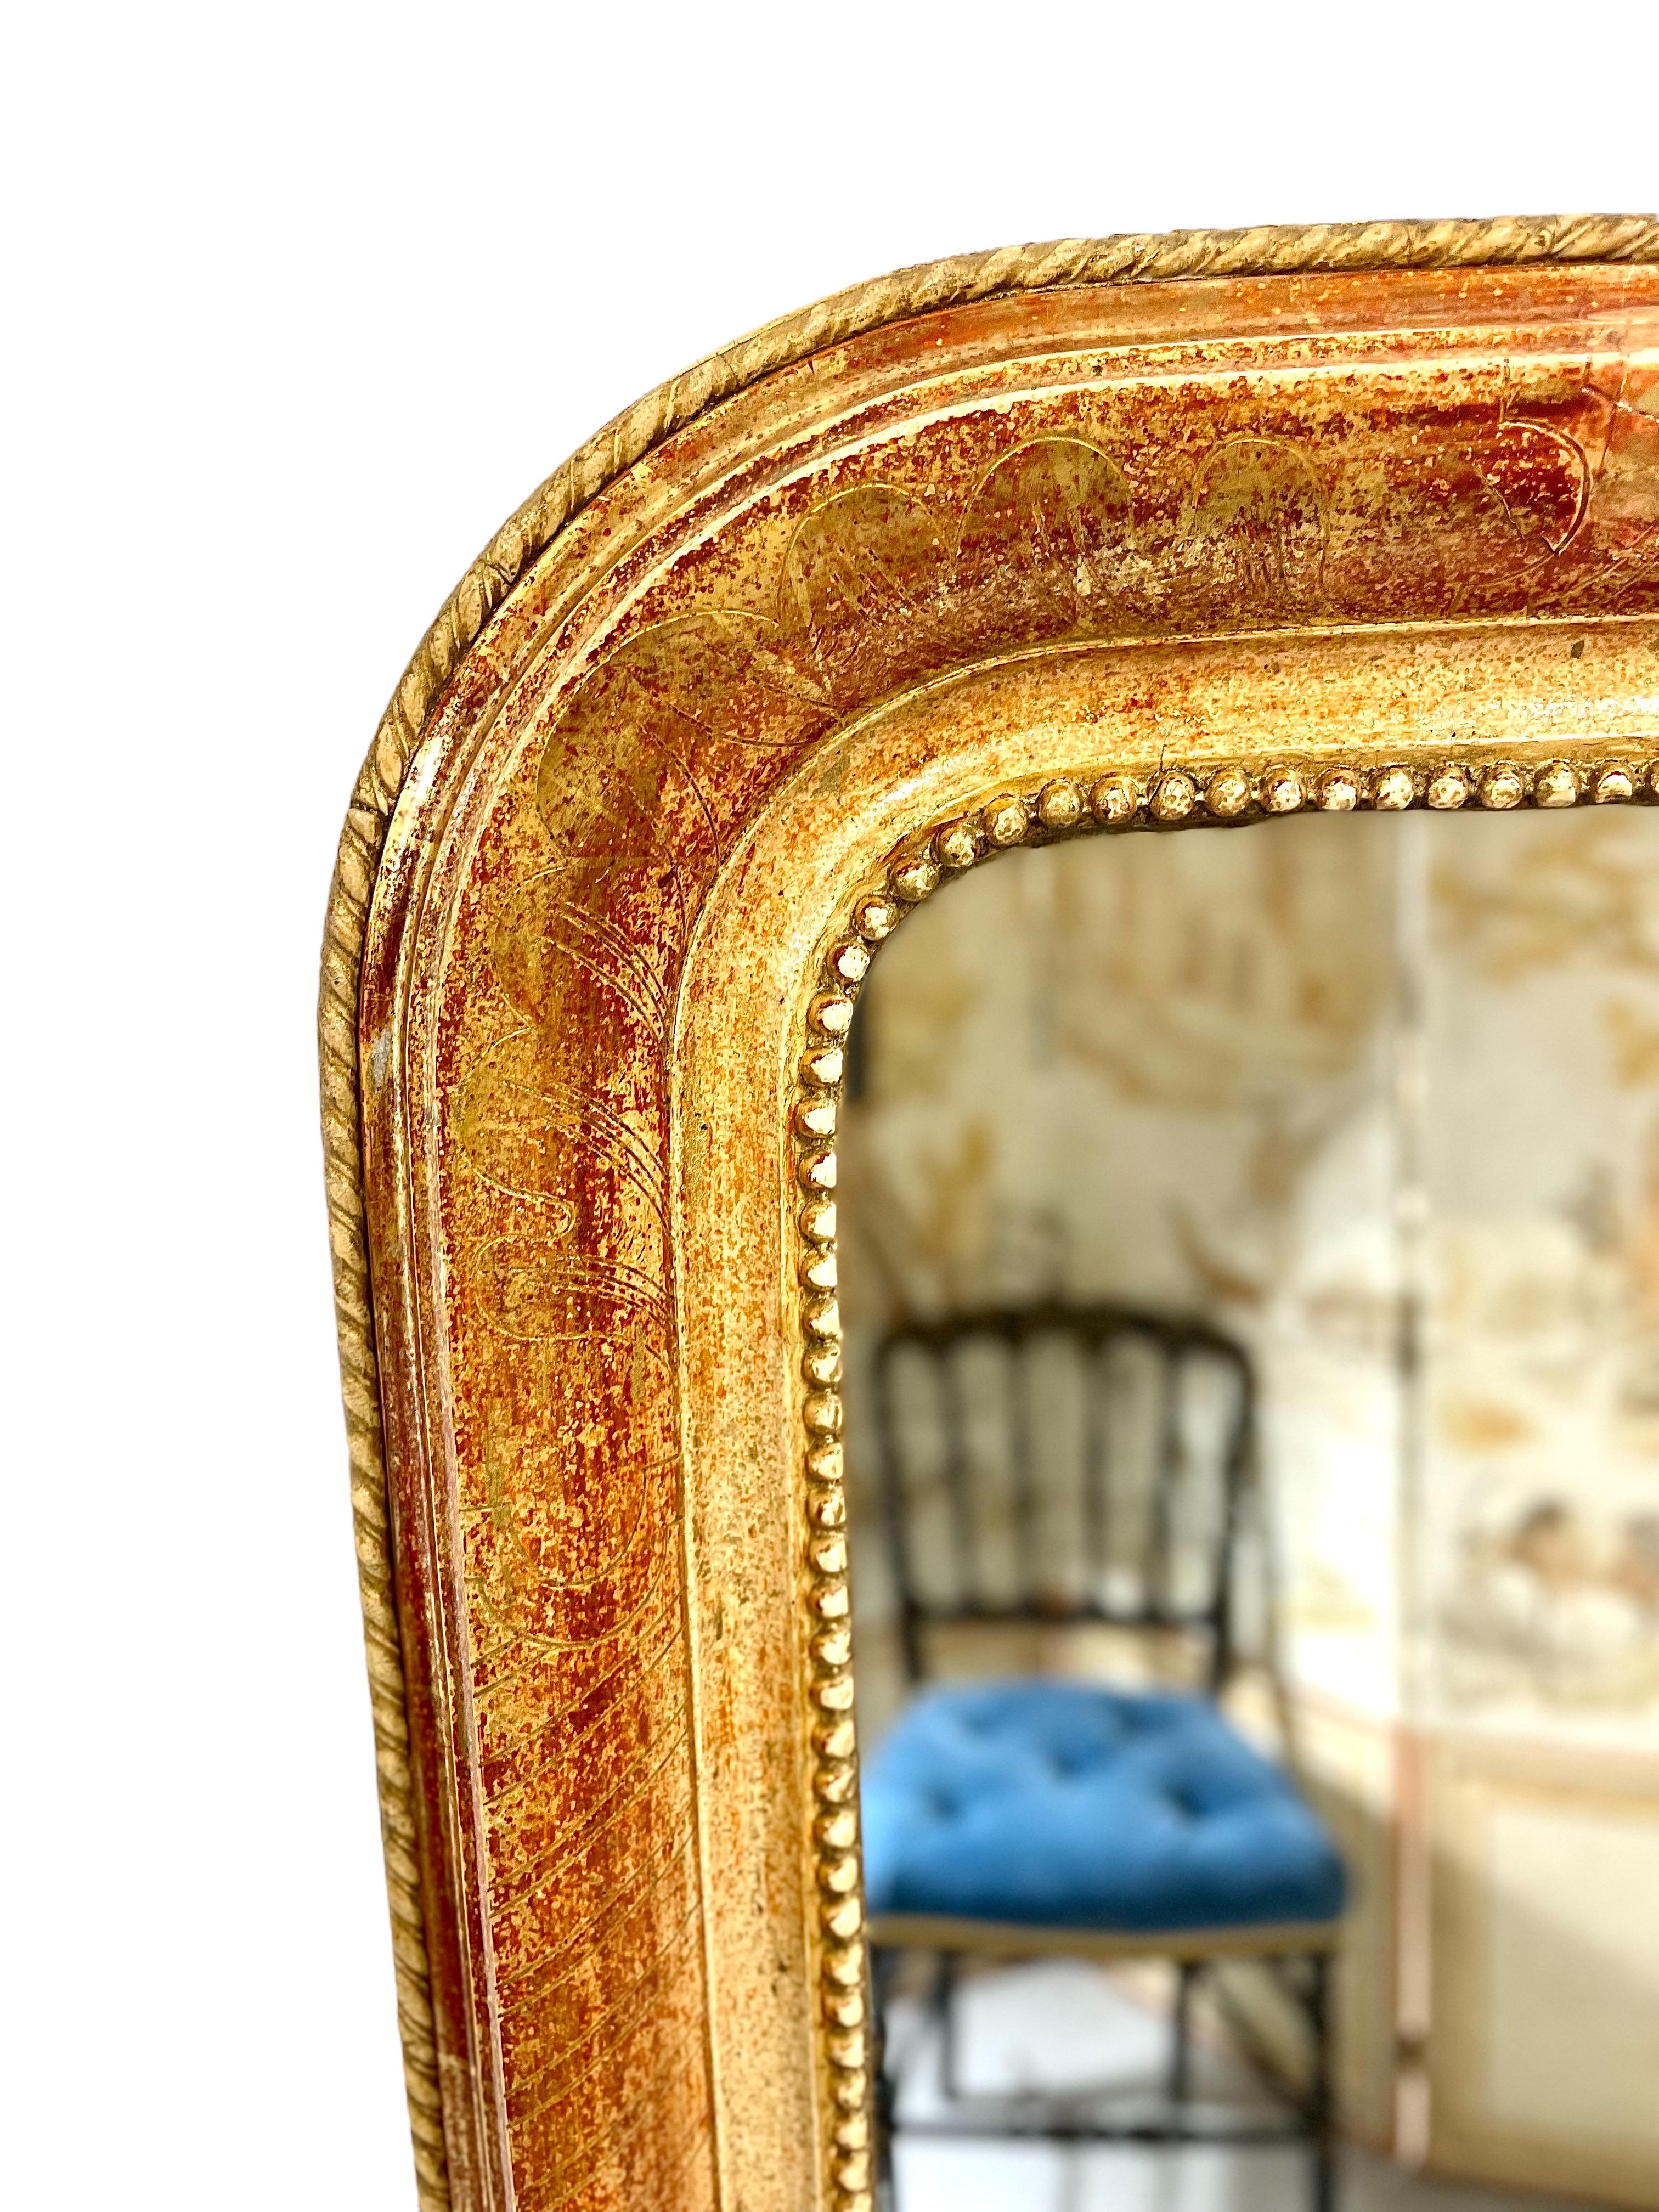 Ein eleganter Spiegel aus vergoldetem Louis-Philippe-Holz mit den charakteristischen abgerundeten oberen Ecken, die so typisch für diese Zeit sind. Der innere Rand des Rahmens ist mit einem Fries aus winzigen 